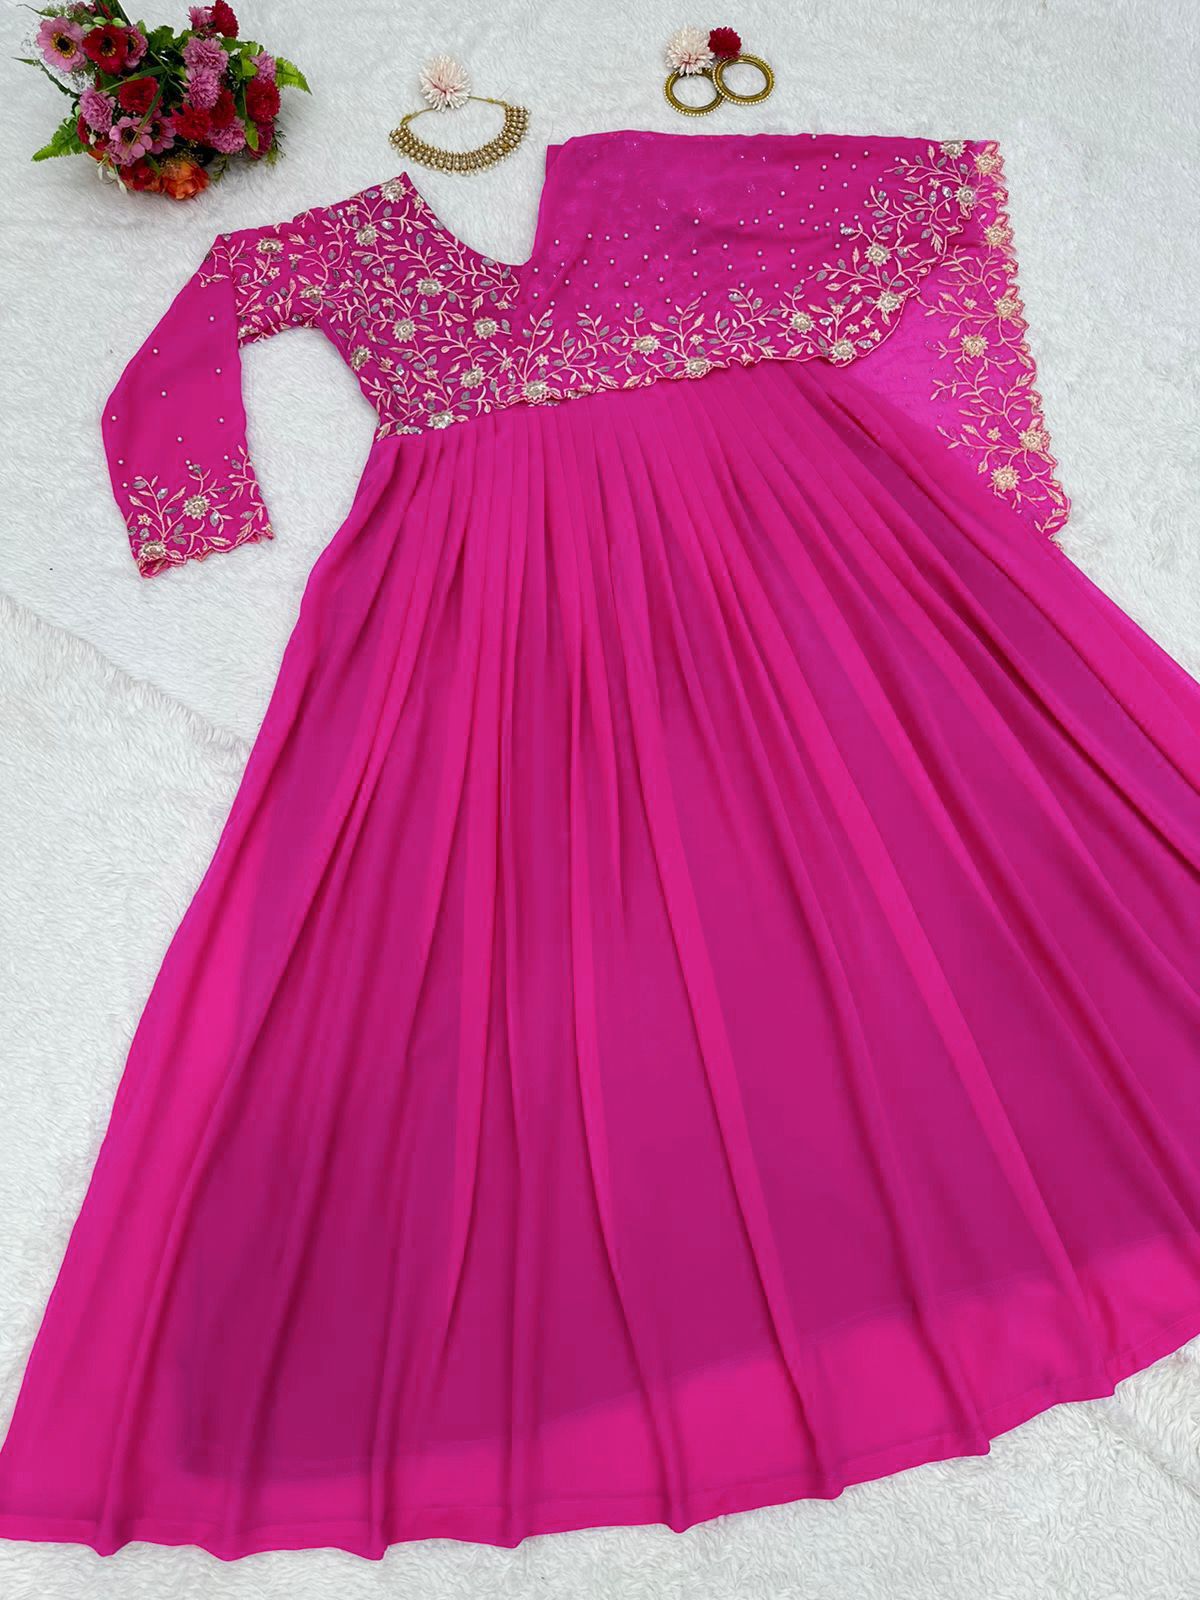 Women´s Boho Floral Maxi Long Dress Summer Beach Evening Party Sundress -  Walmart.com